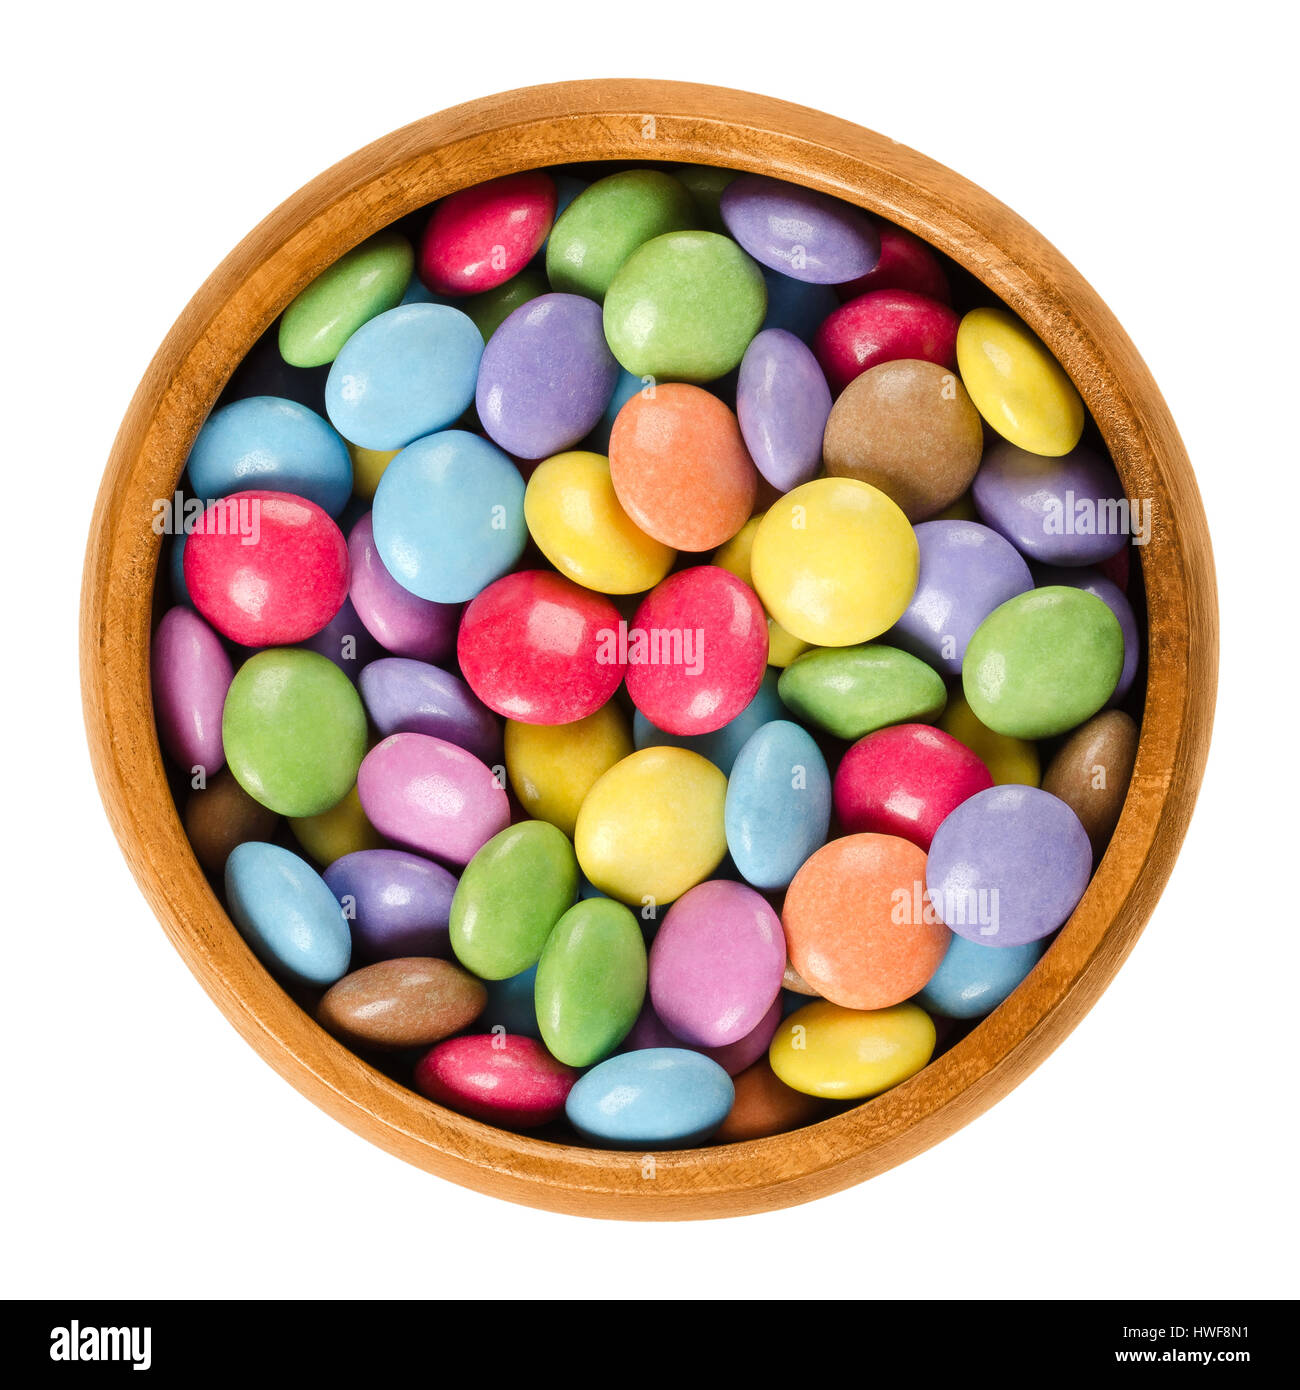 Bunte Pralinen in Holzschale. Zucker-beschichtete Schokoladenwaren in acht verschiedenen Farben. Oblate Spheroid Bonbons geformt. Stockfoto